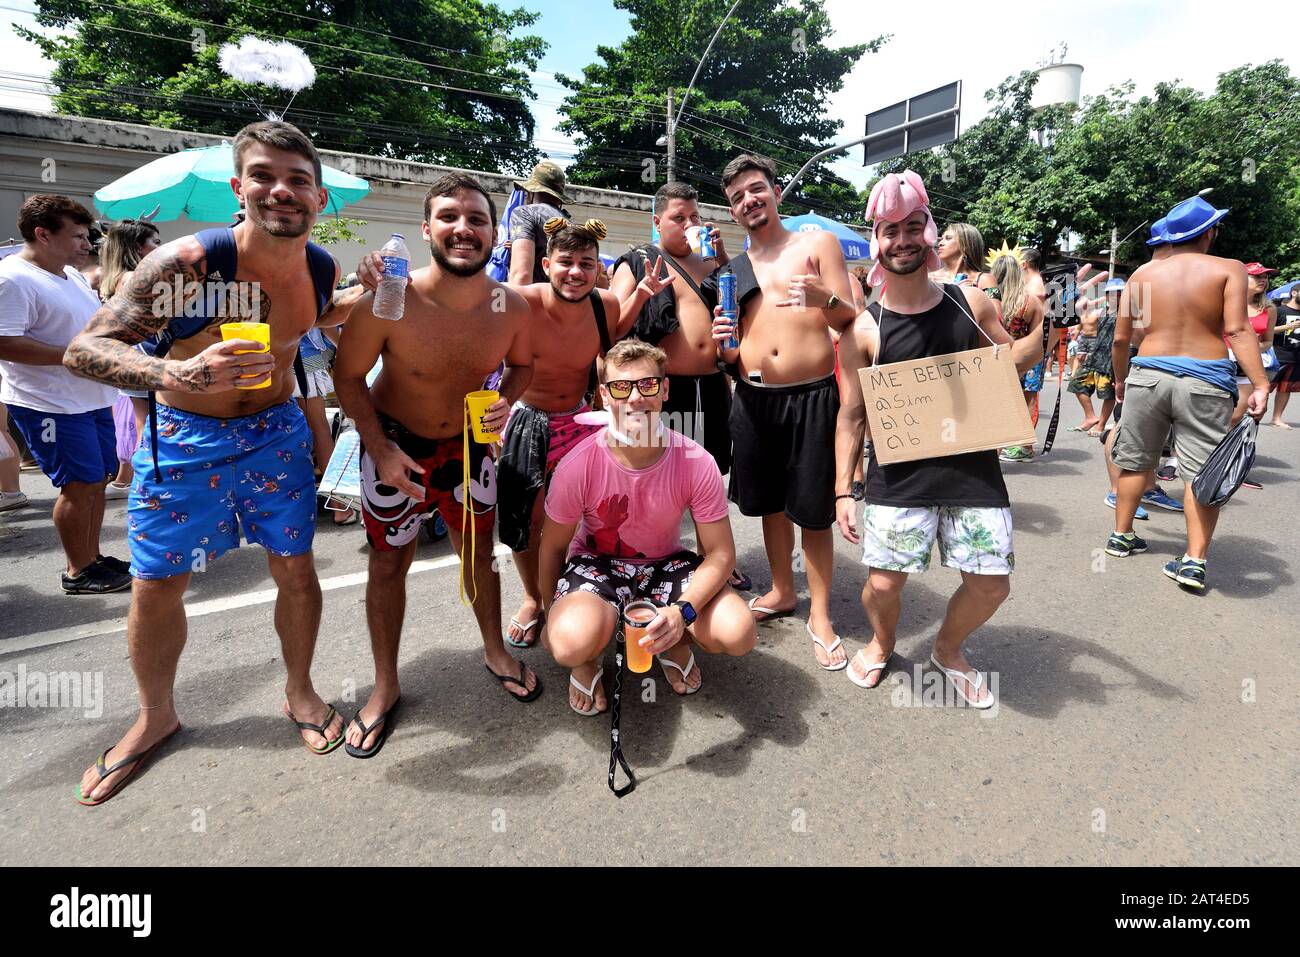 Brasile - 5 marzo 2019: Gli amici godono di una festa di Carnevale di strada tenutasi a Rio de Janeiro. Il Carnevale in Brasile è tra i migliori carnevali del mondo. Foto Stock